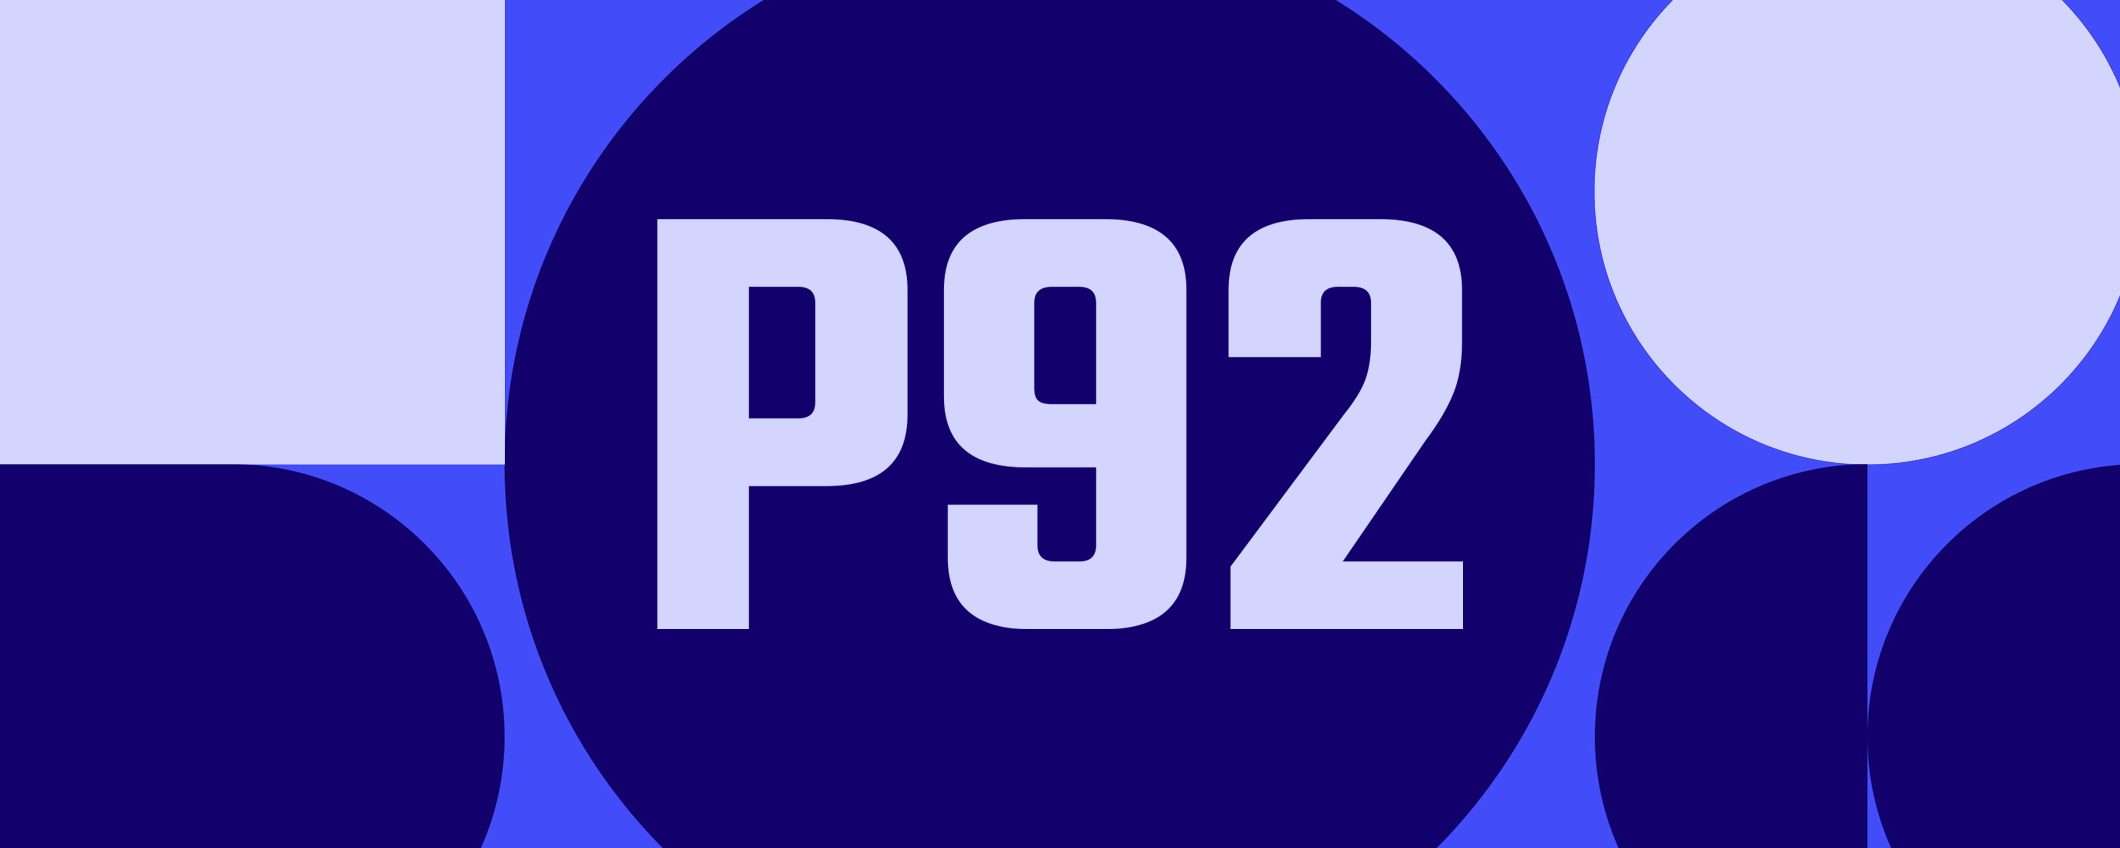 P92 sarà il social network decentralizzato di Meta